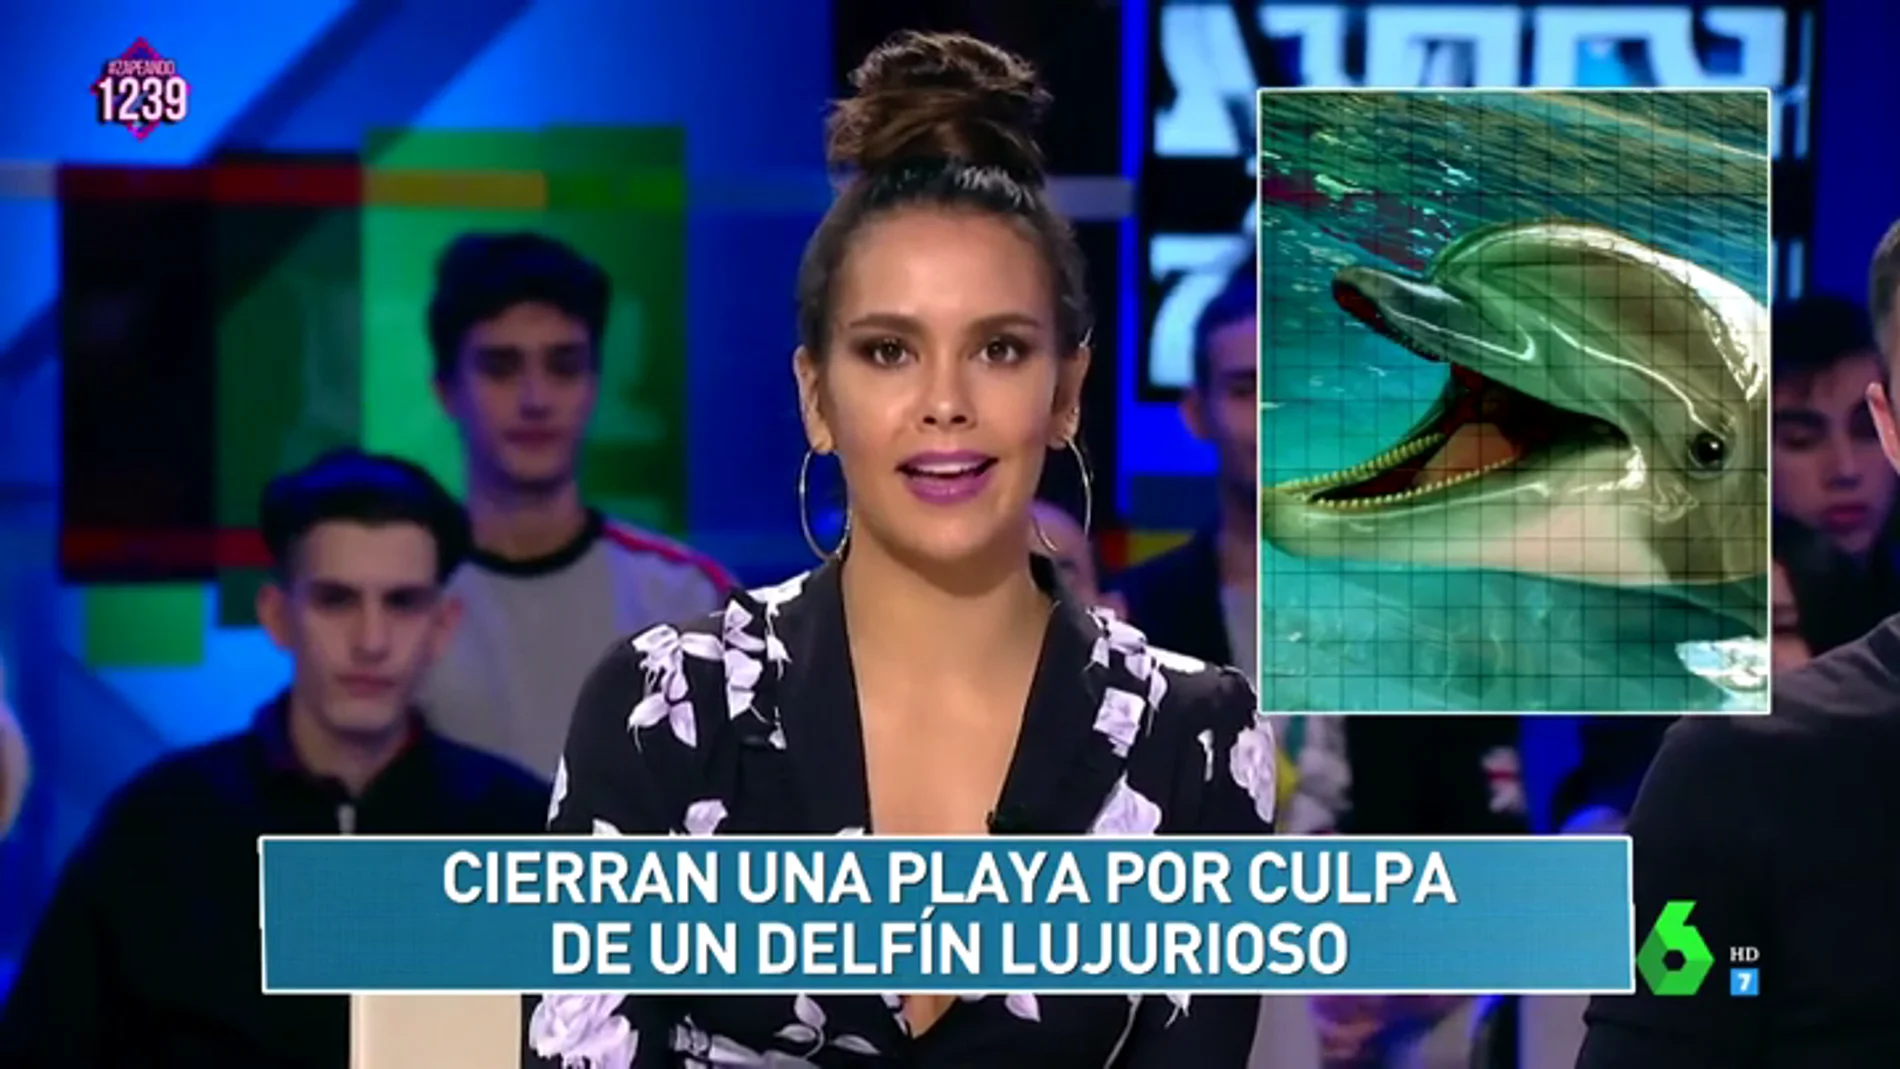 "Cierran una playa por culpa de un delfín lujurioso": el 'Zapcheck' de Cristina Pedroche pone a prueba a los zapeadores